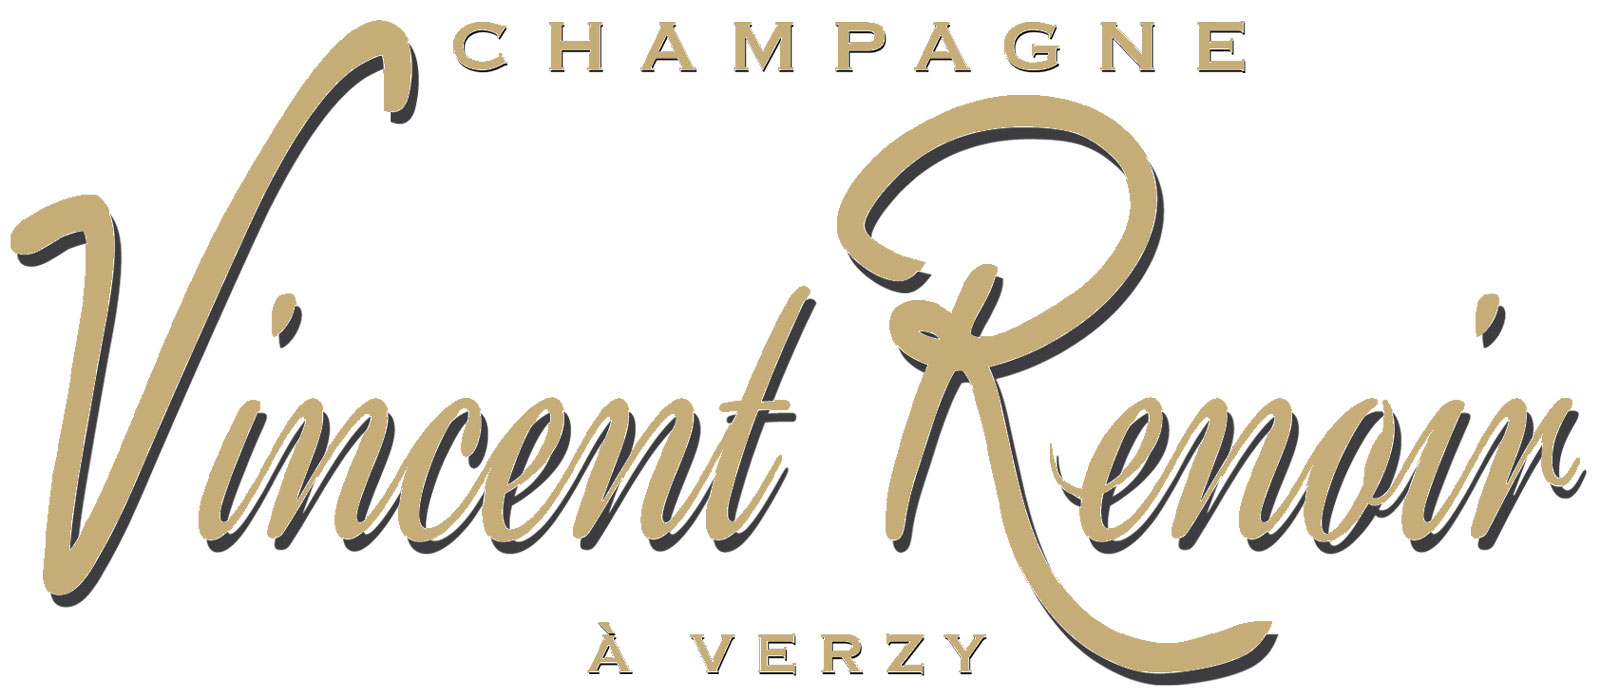 Champagne Vincent Renoir